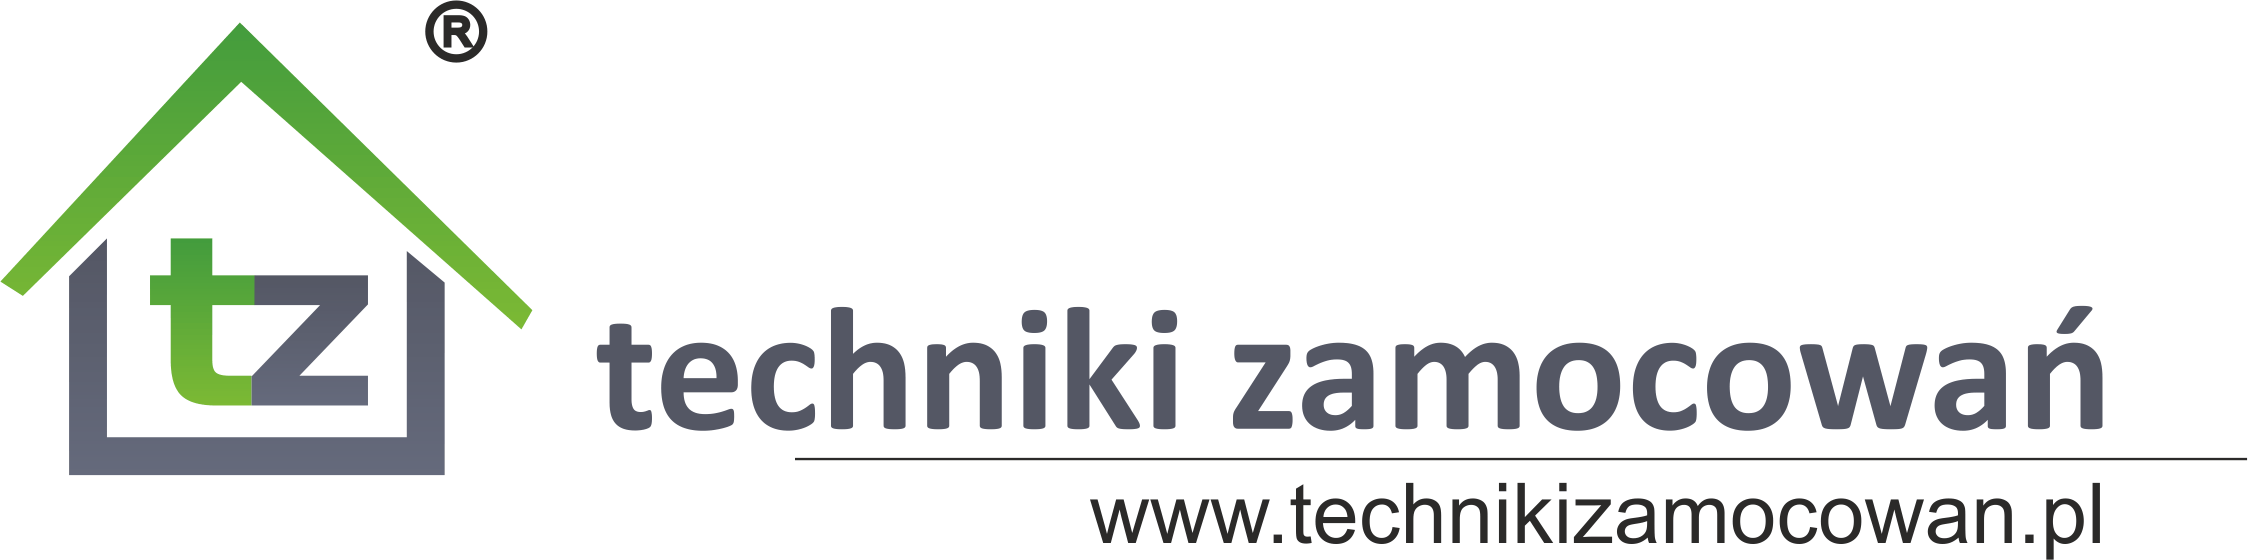 logo z www 2017